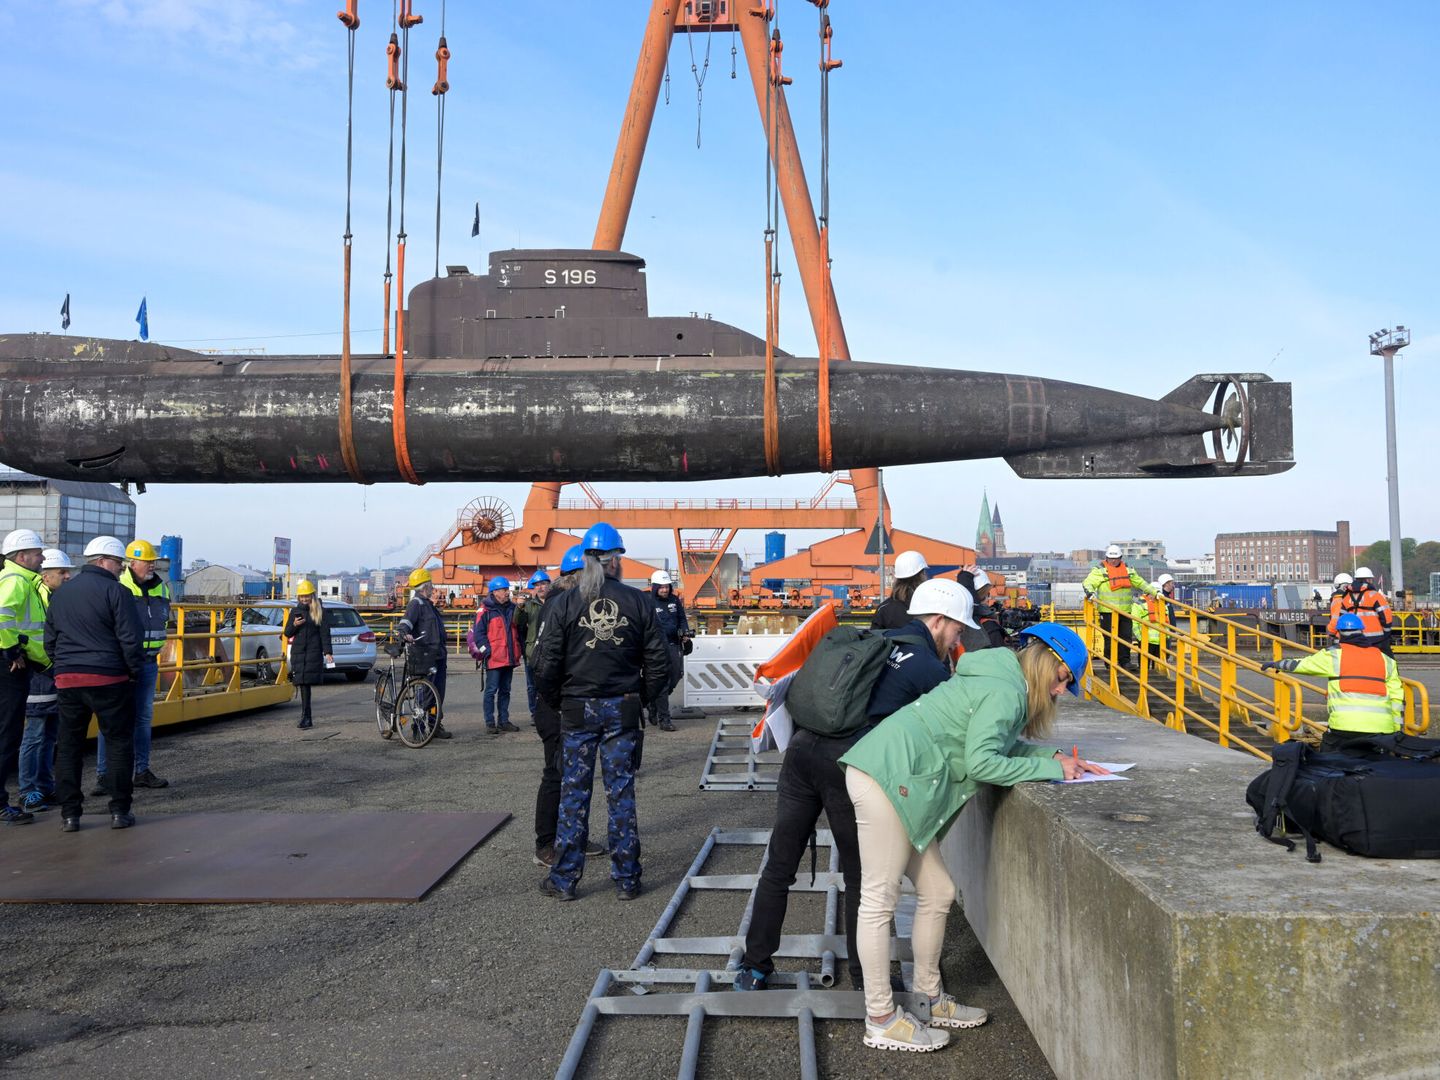 El submarino, siendo trasladado por una grúa (REUTERS/Fabian Bimmer)